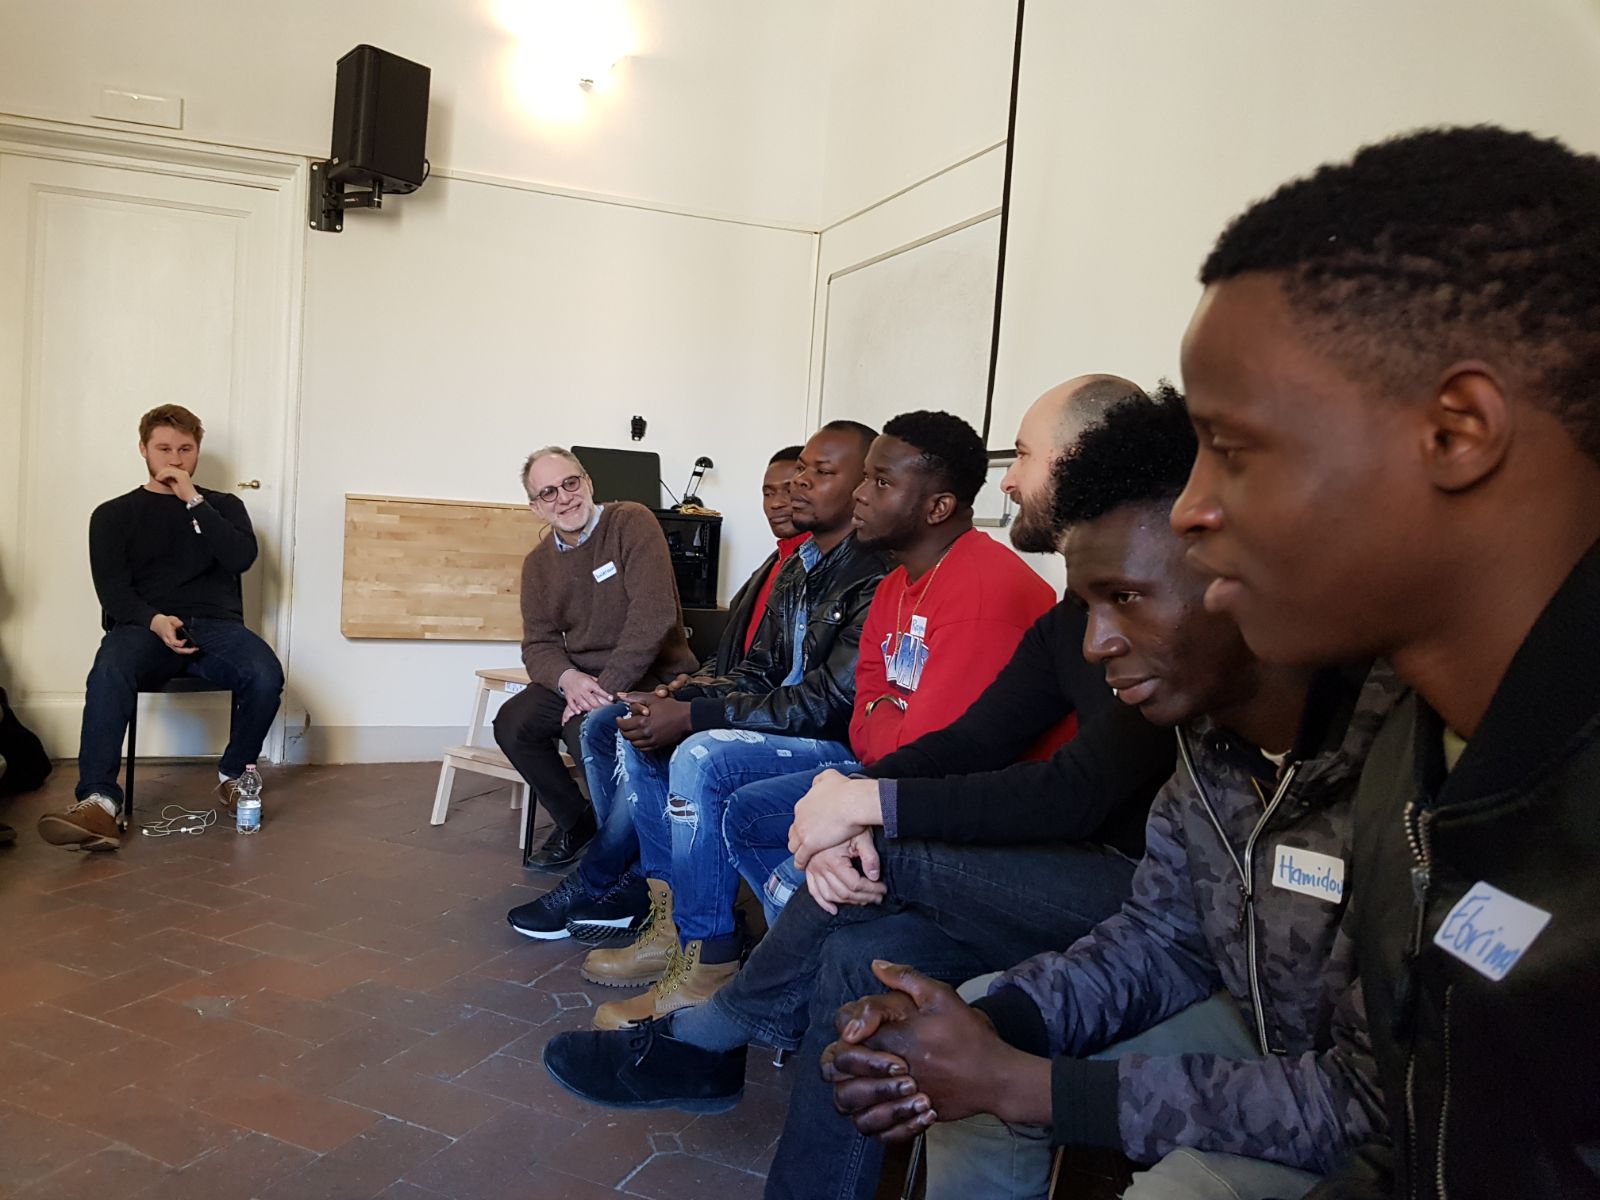 Immigrazione: incontro a Firenze fra studenti americani e migranti